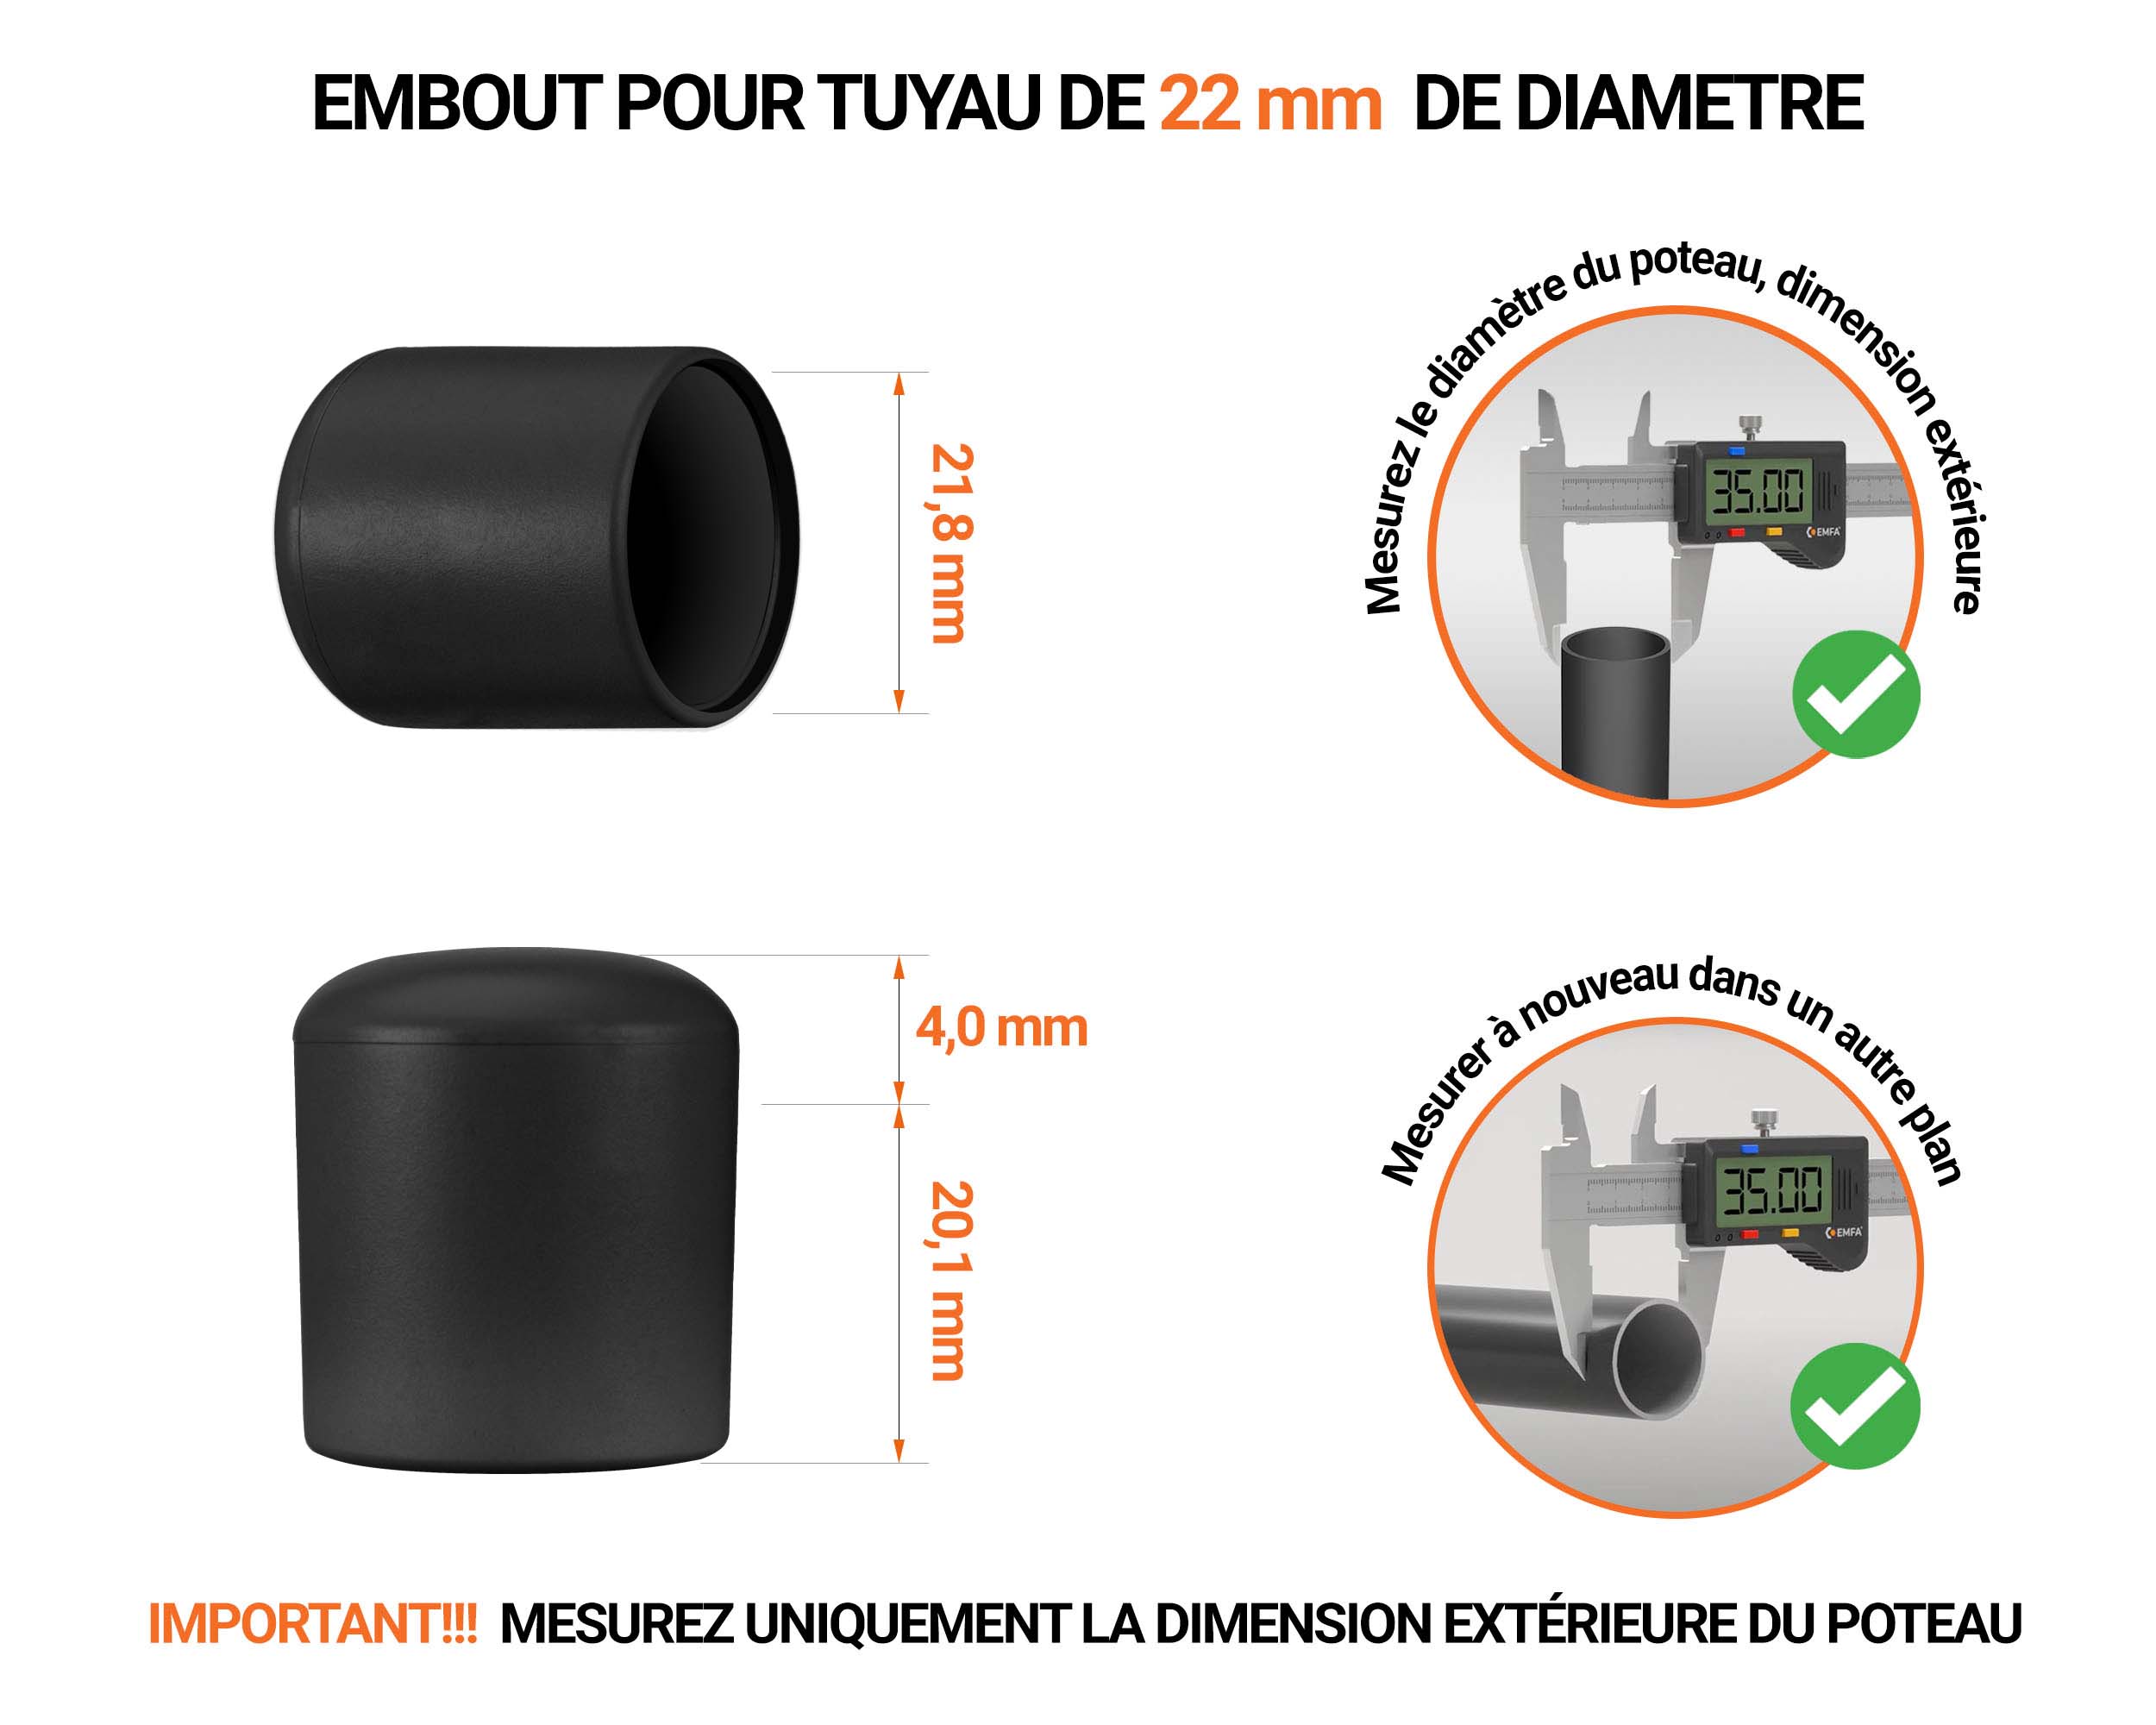 Embout blanc de diamètre extérieur 22 mm pour tube rond avec dimensions et guide de mesure correcte du bouchon plastique.